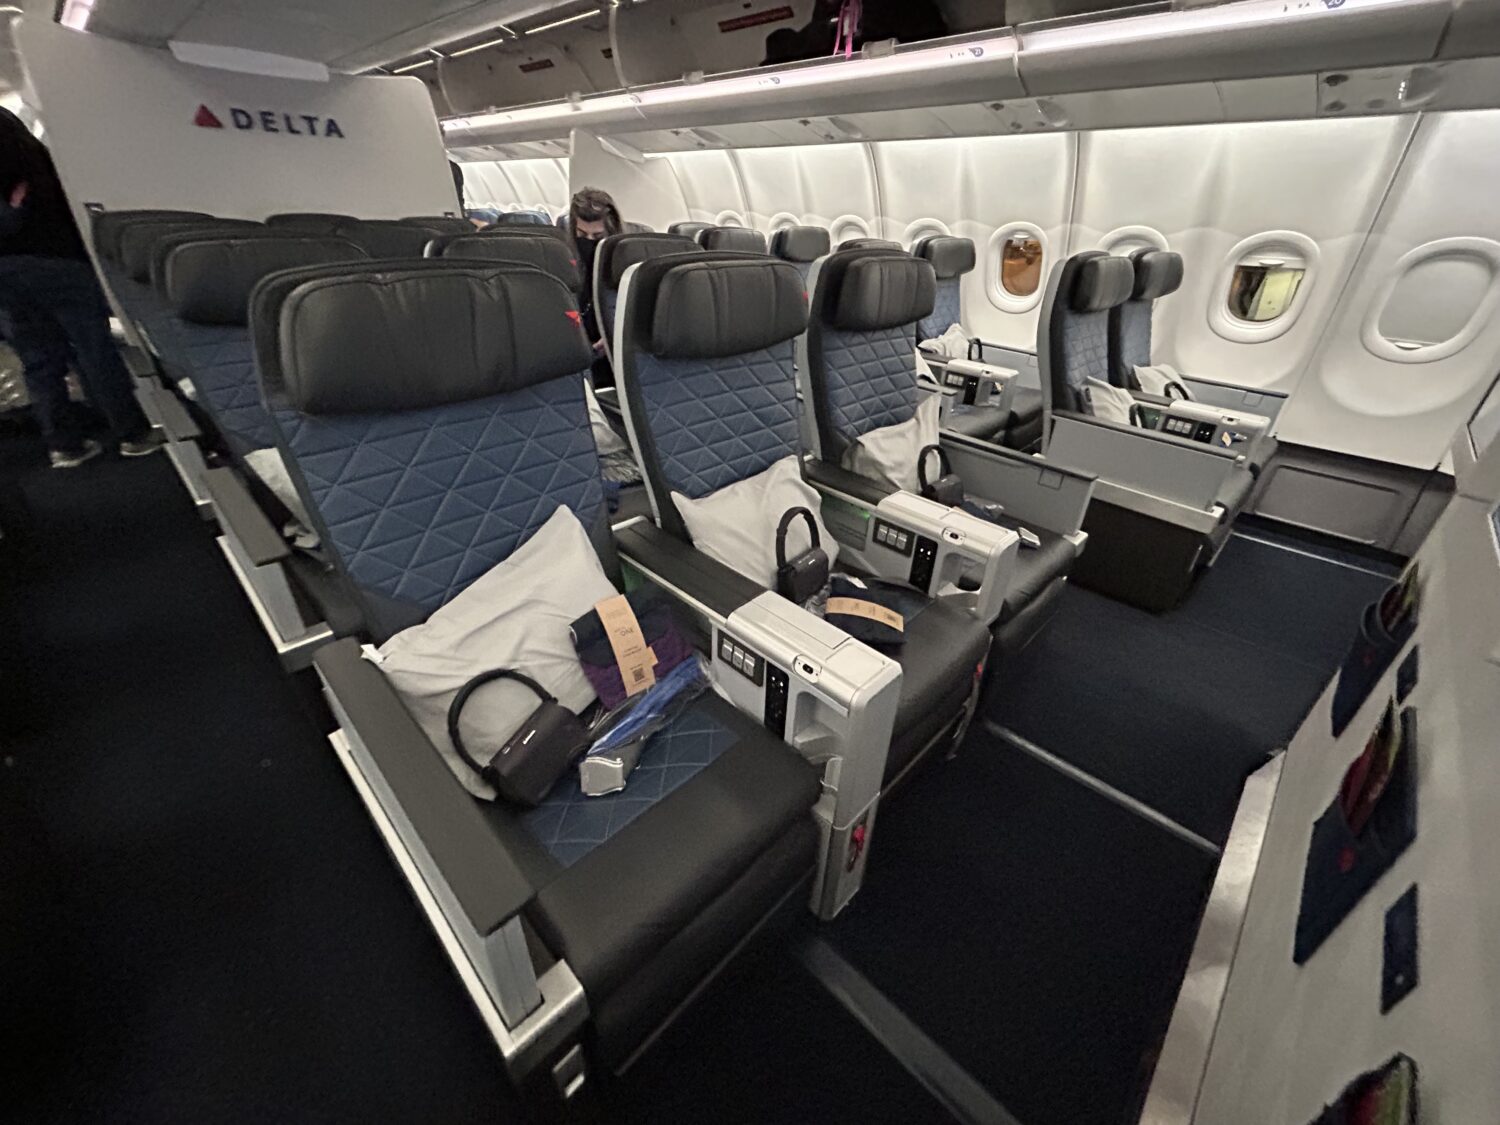 Delta Premium Select cabin